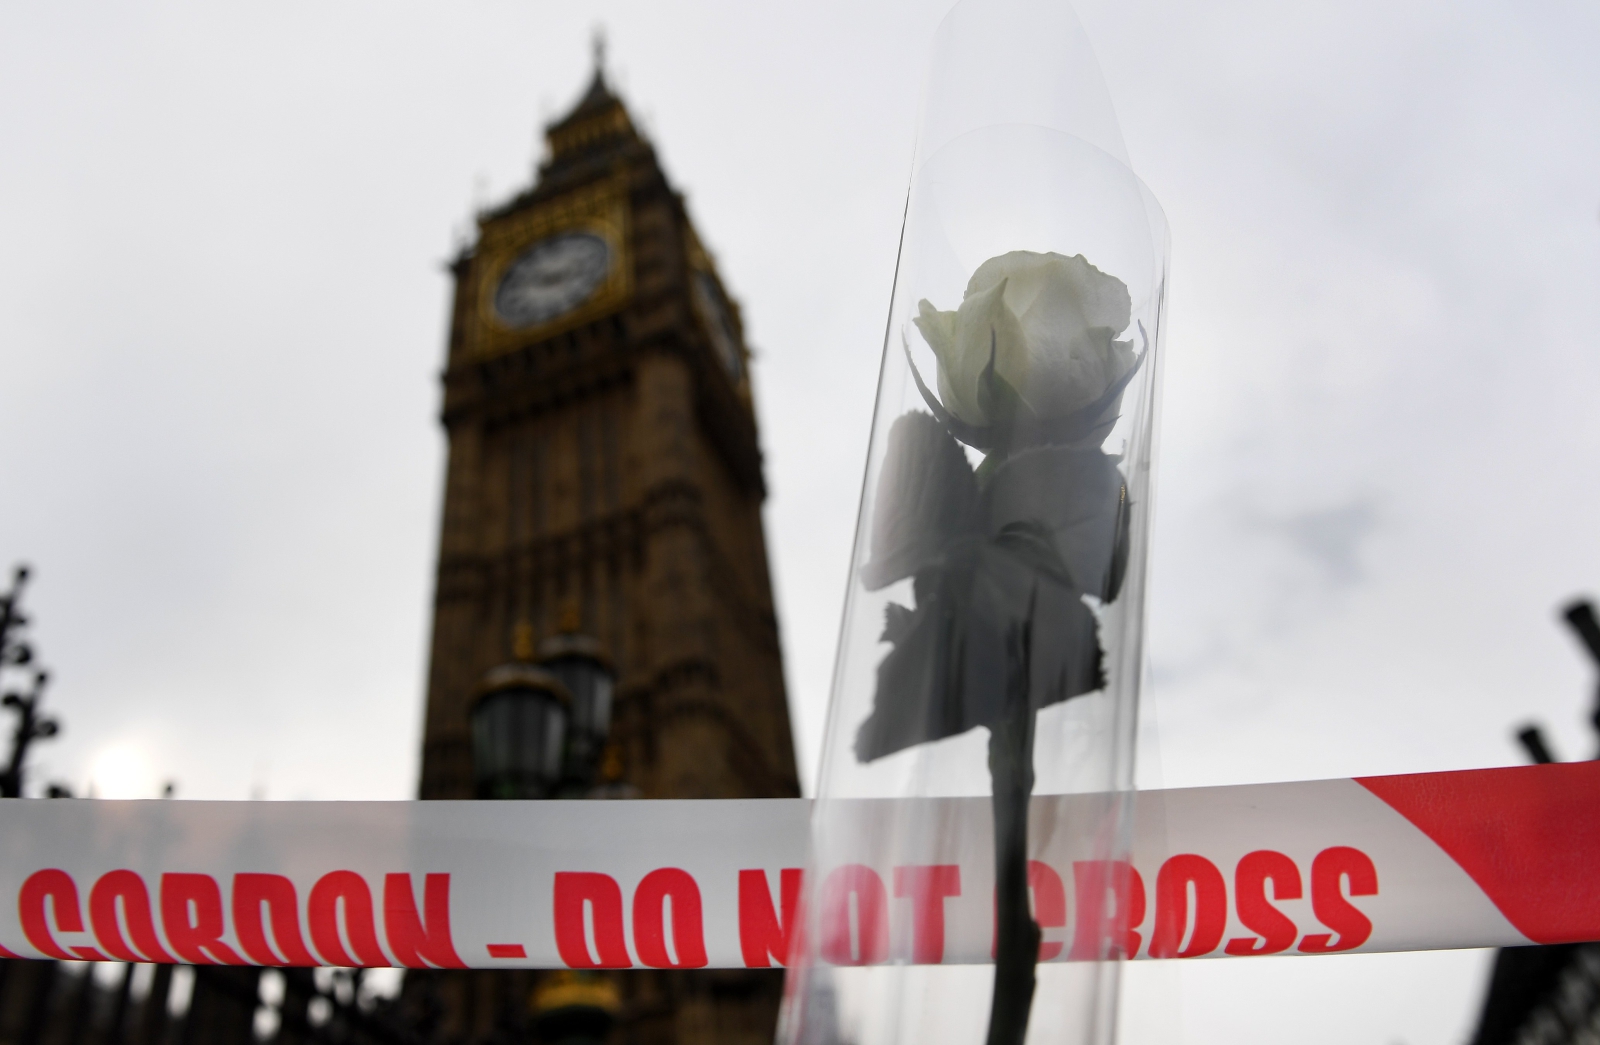 Zamach w pobliżu brytyjskiego parlamentu w Londynie. Dwóćh zabitych i 29 rannych.
Fot. PAP/EPA/ANDY RAIN